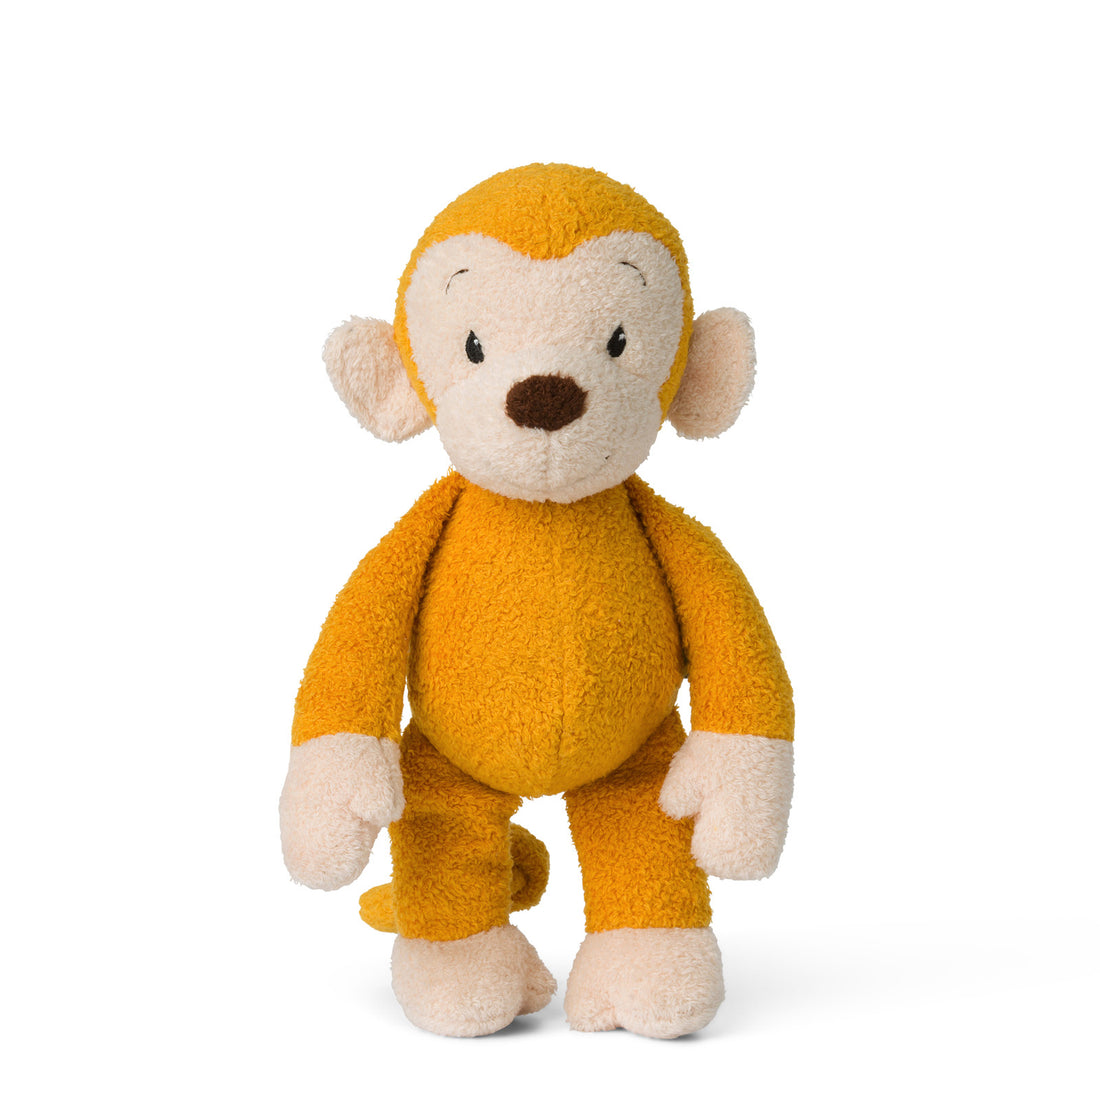 wwf-cub-club-mago-the-monkey-yellow-squeaker- (1)